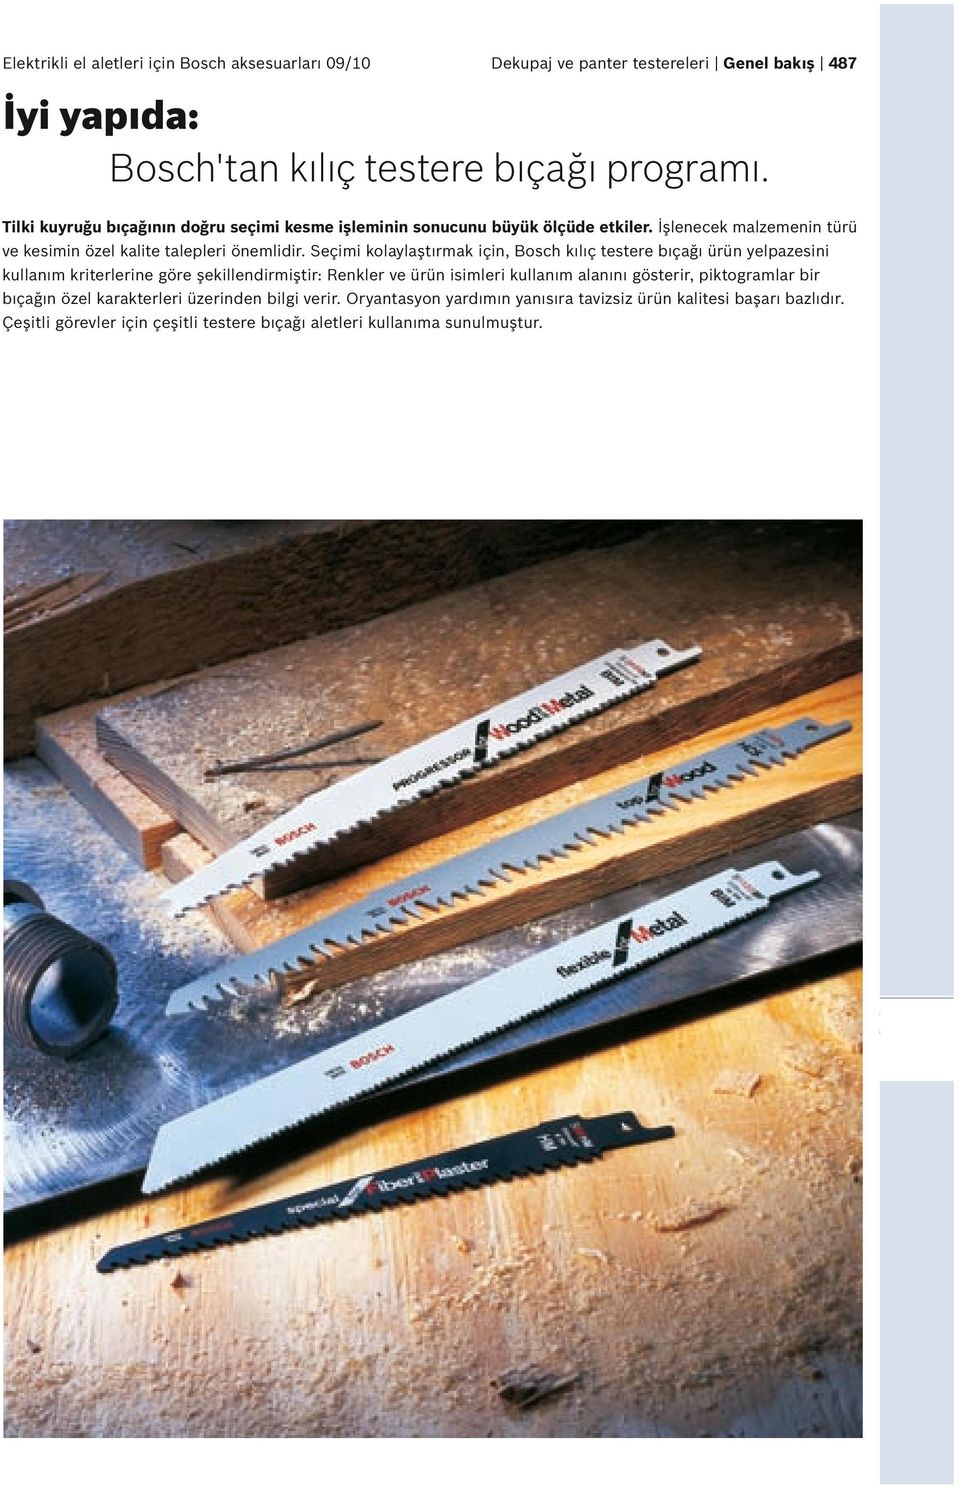 Seçimi kolaylaştırmak için, Bosch kılıç testere bıçağı ürün yelpazesini kullanım kriterlerine göre şekillendirmiştir: Renkler ve ürün isimleri kullanım alanını